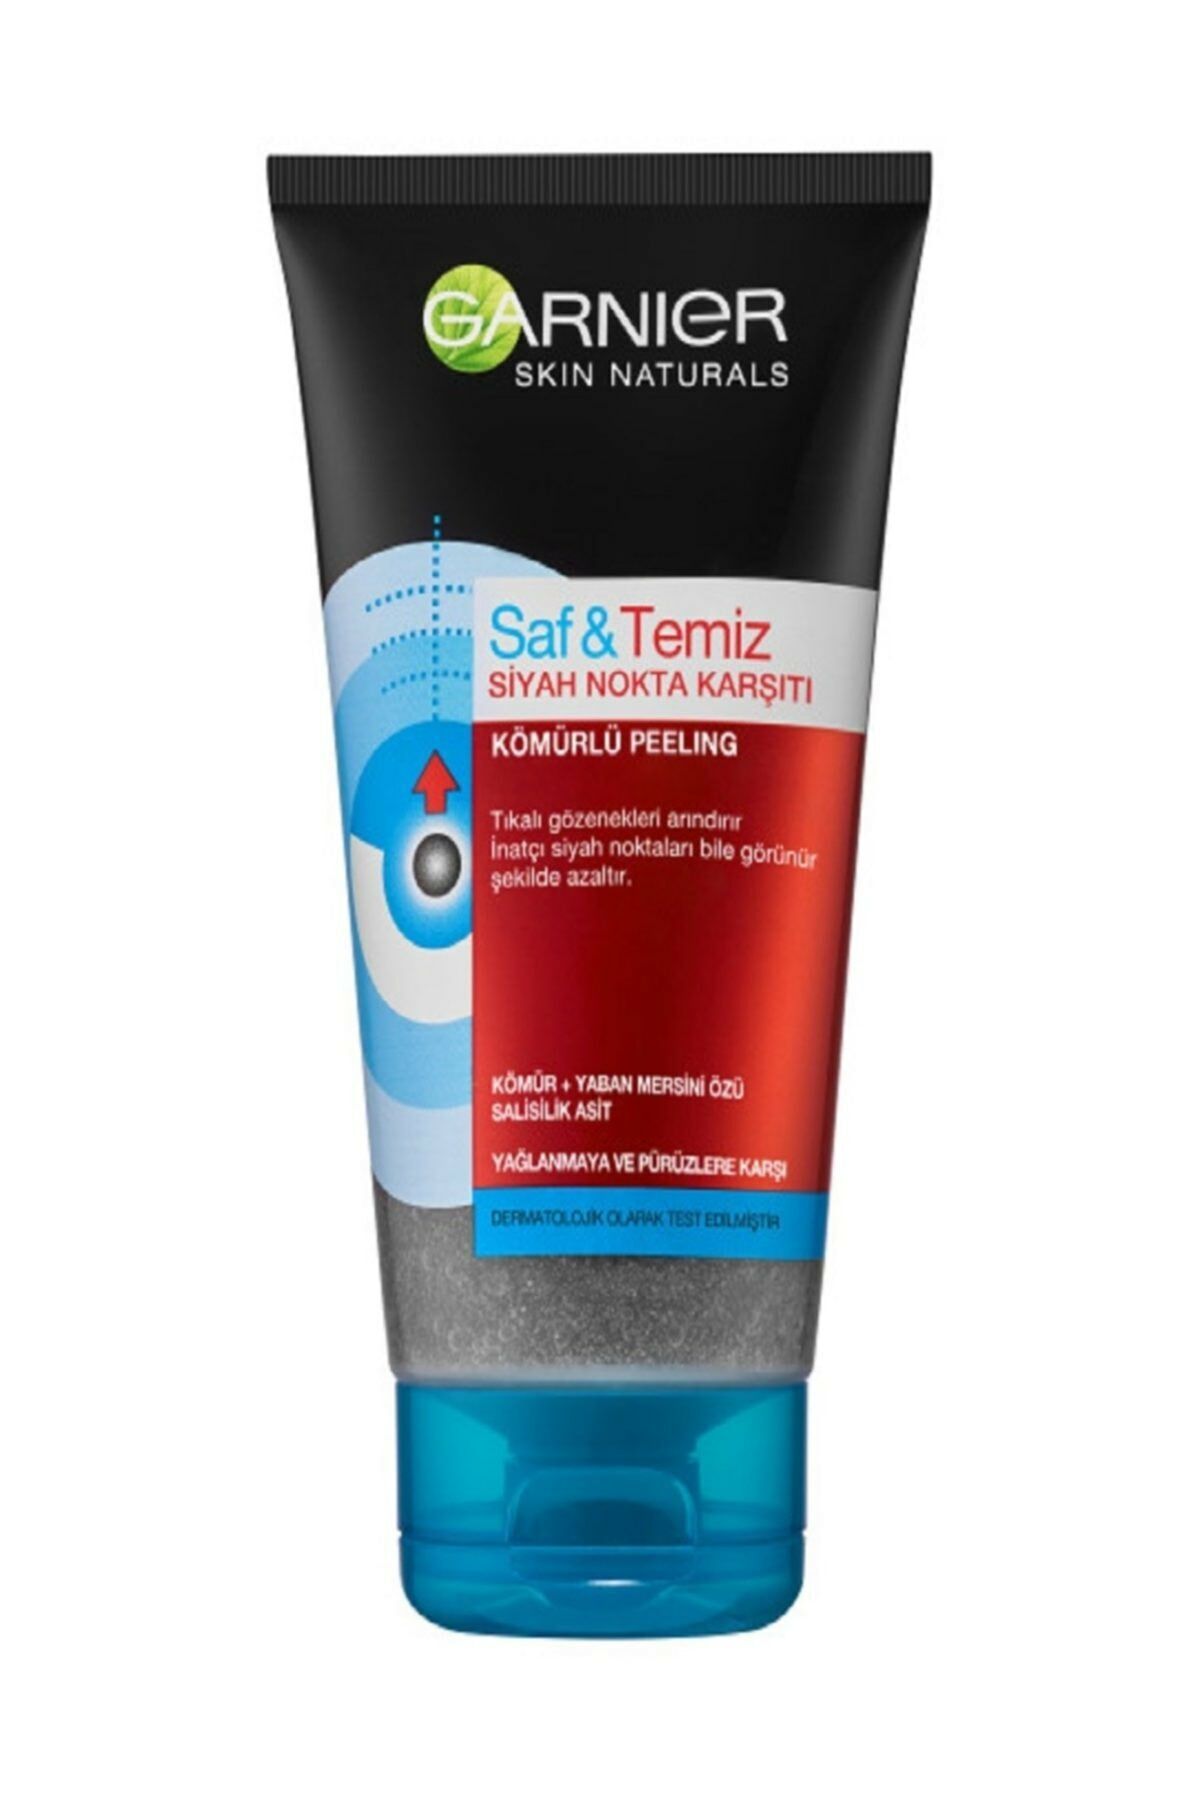 Garnier Skin Naturals Pure Active Temizleme Jeli Kömürlü 150 ml